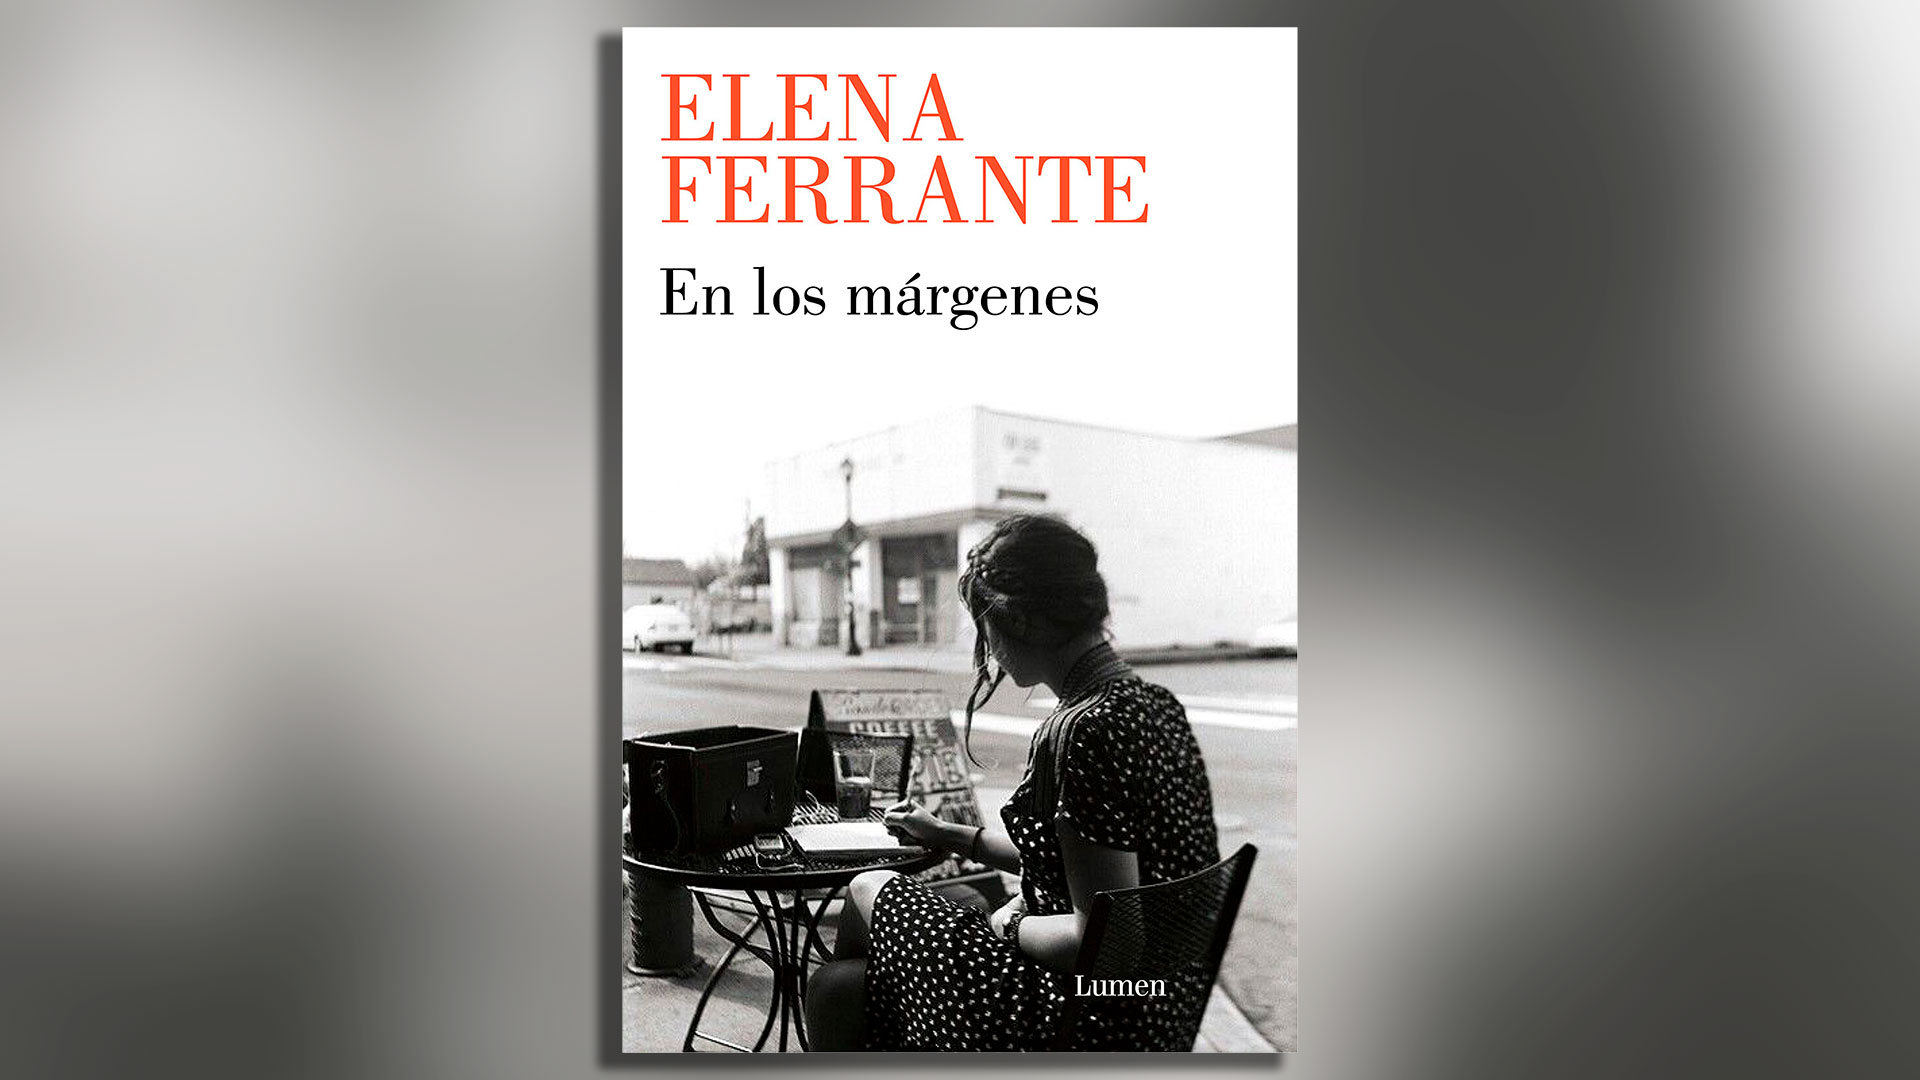 Portada de "En los márgenes", libro de ensayos de Elena Ferrante